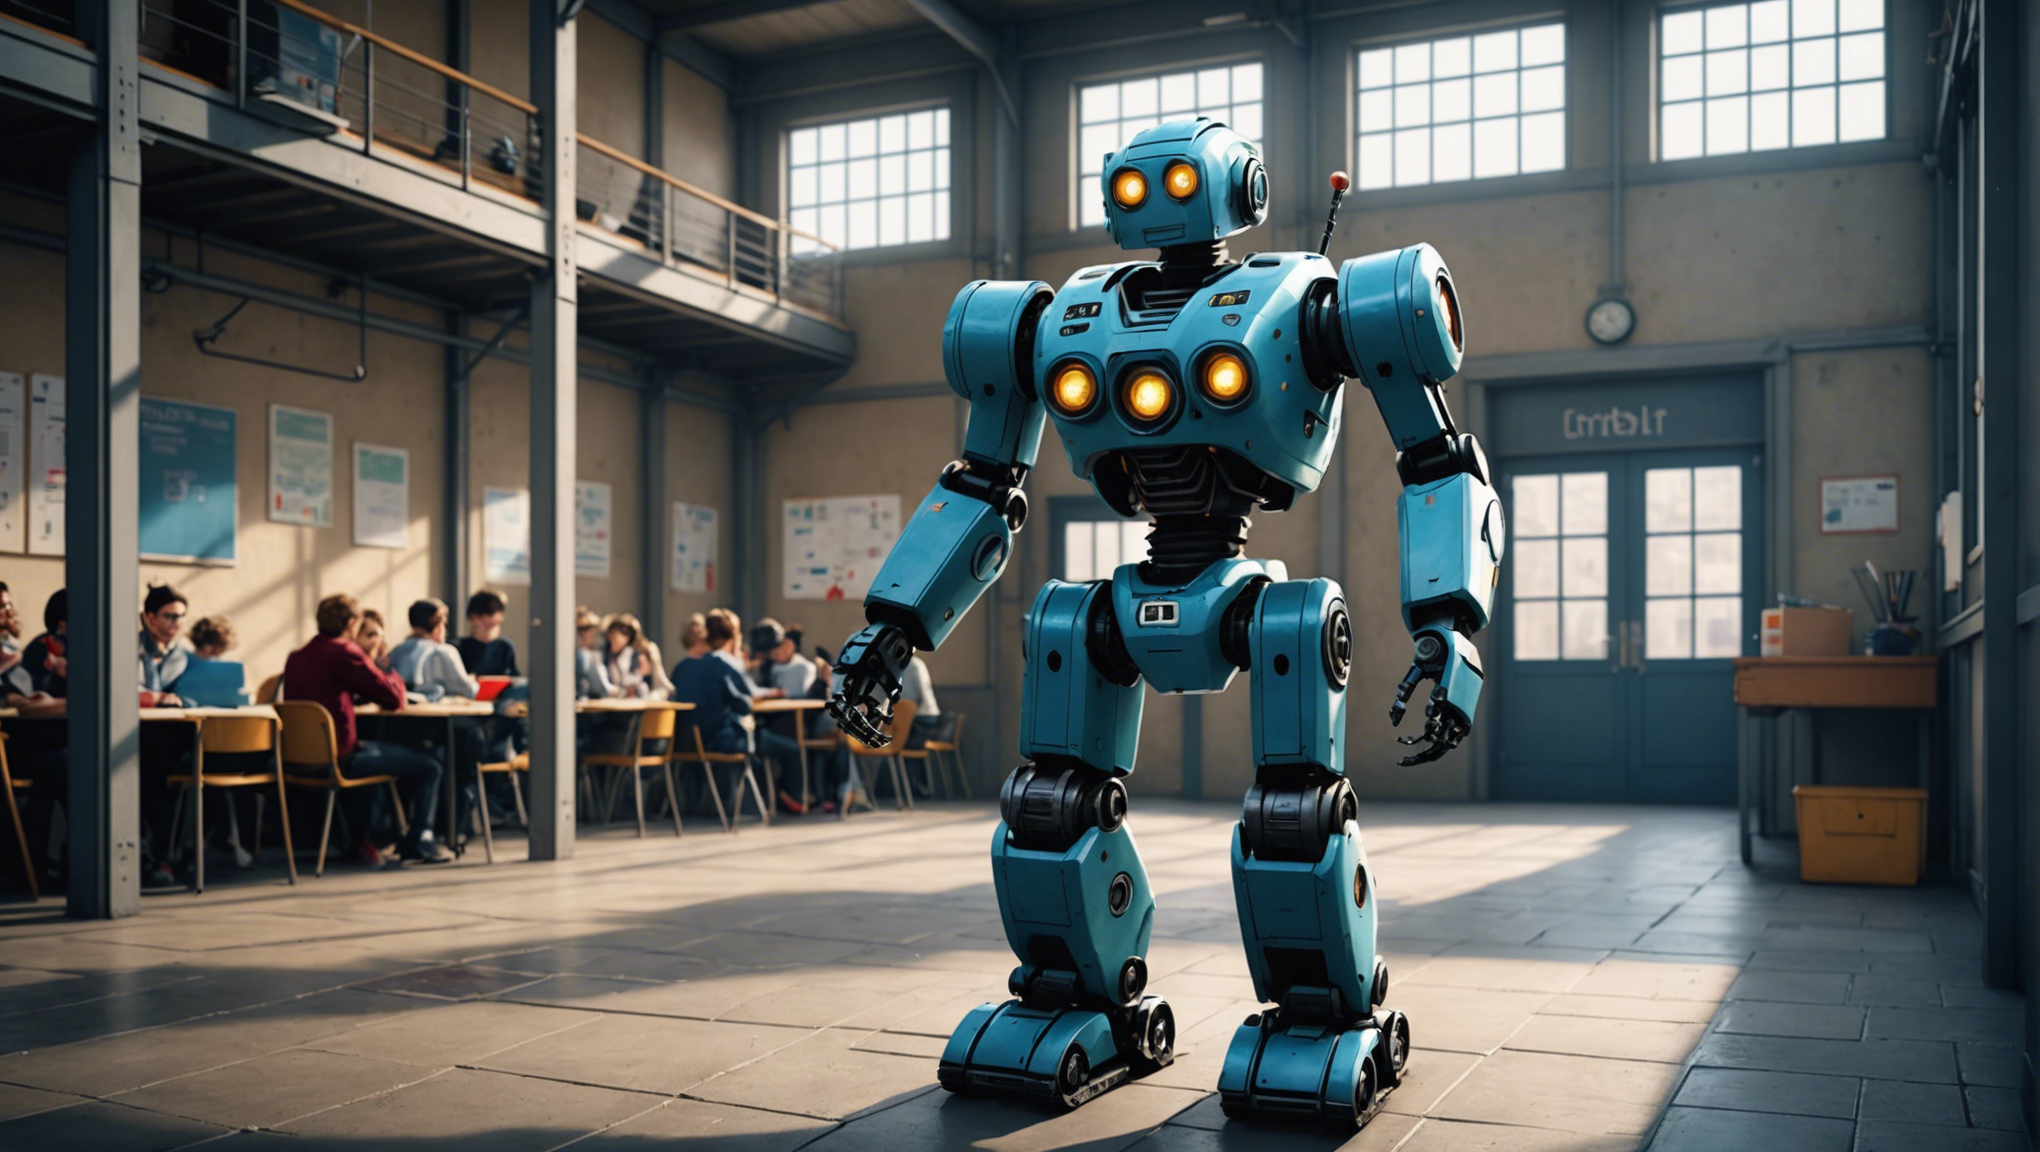 découvrez l'arrivée imminente du robot baxter à l'ecole centrale de nantes et son impact sur la formation et la recherche.